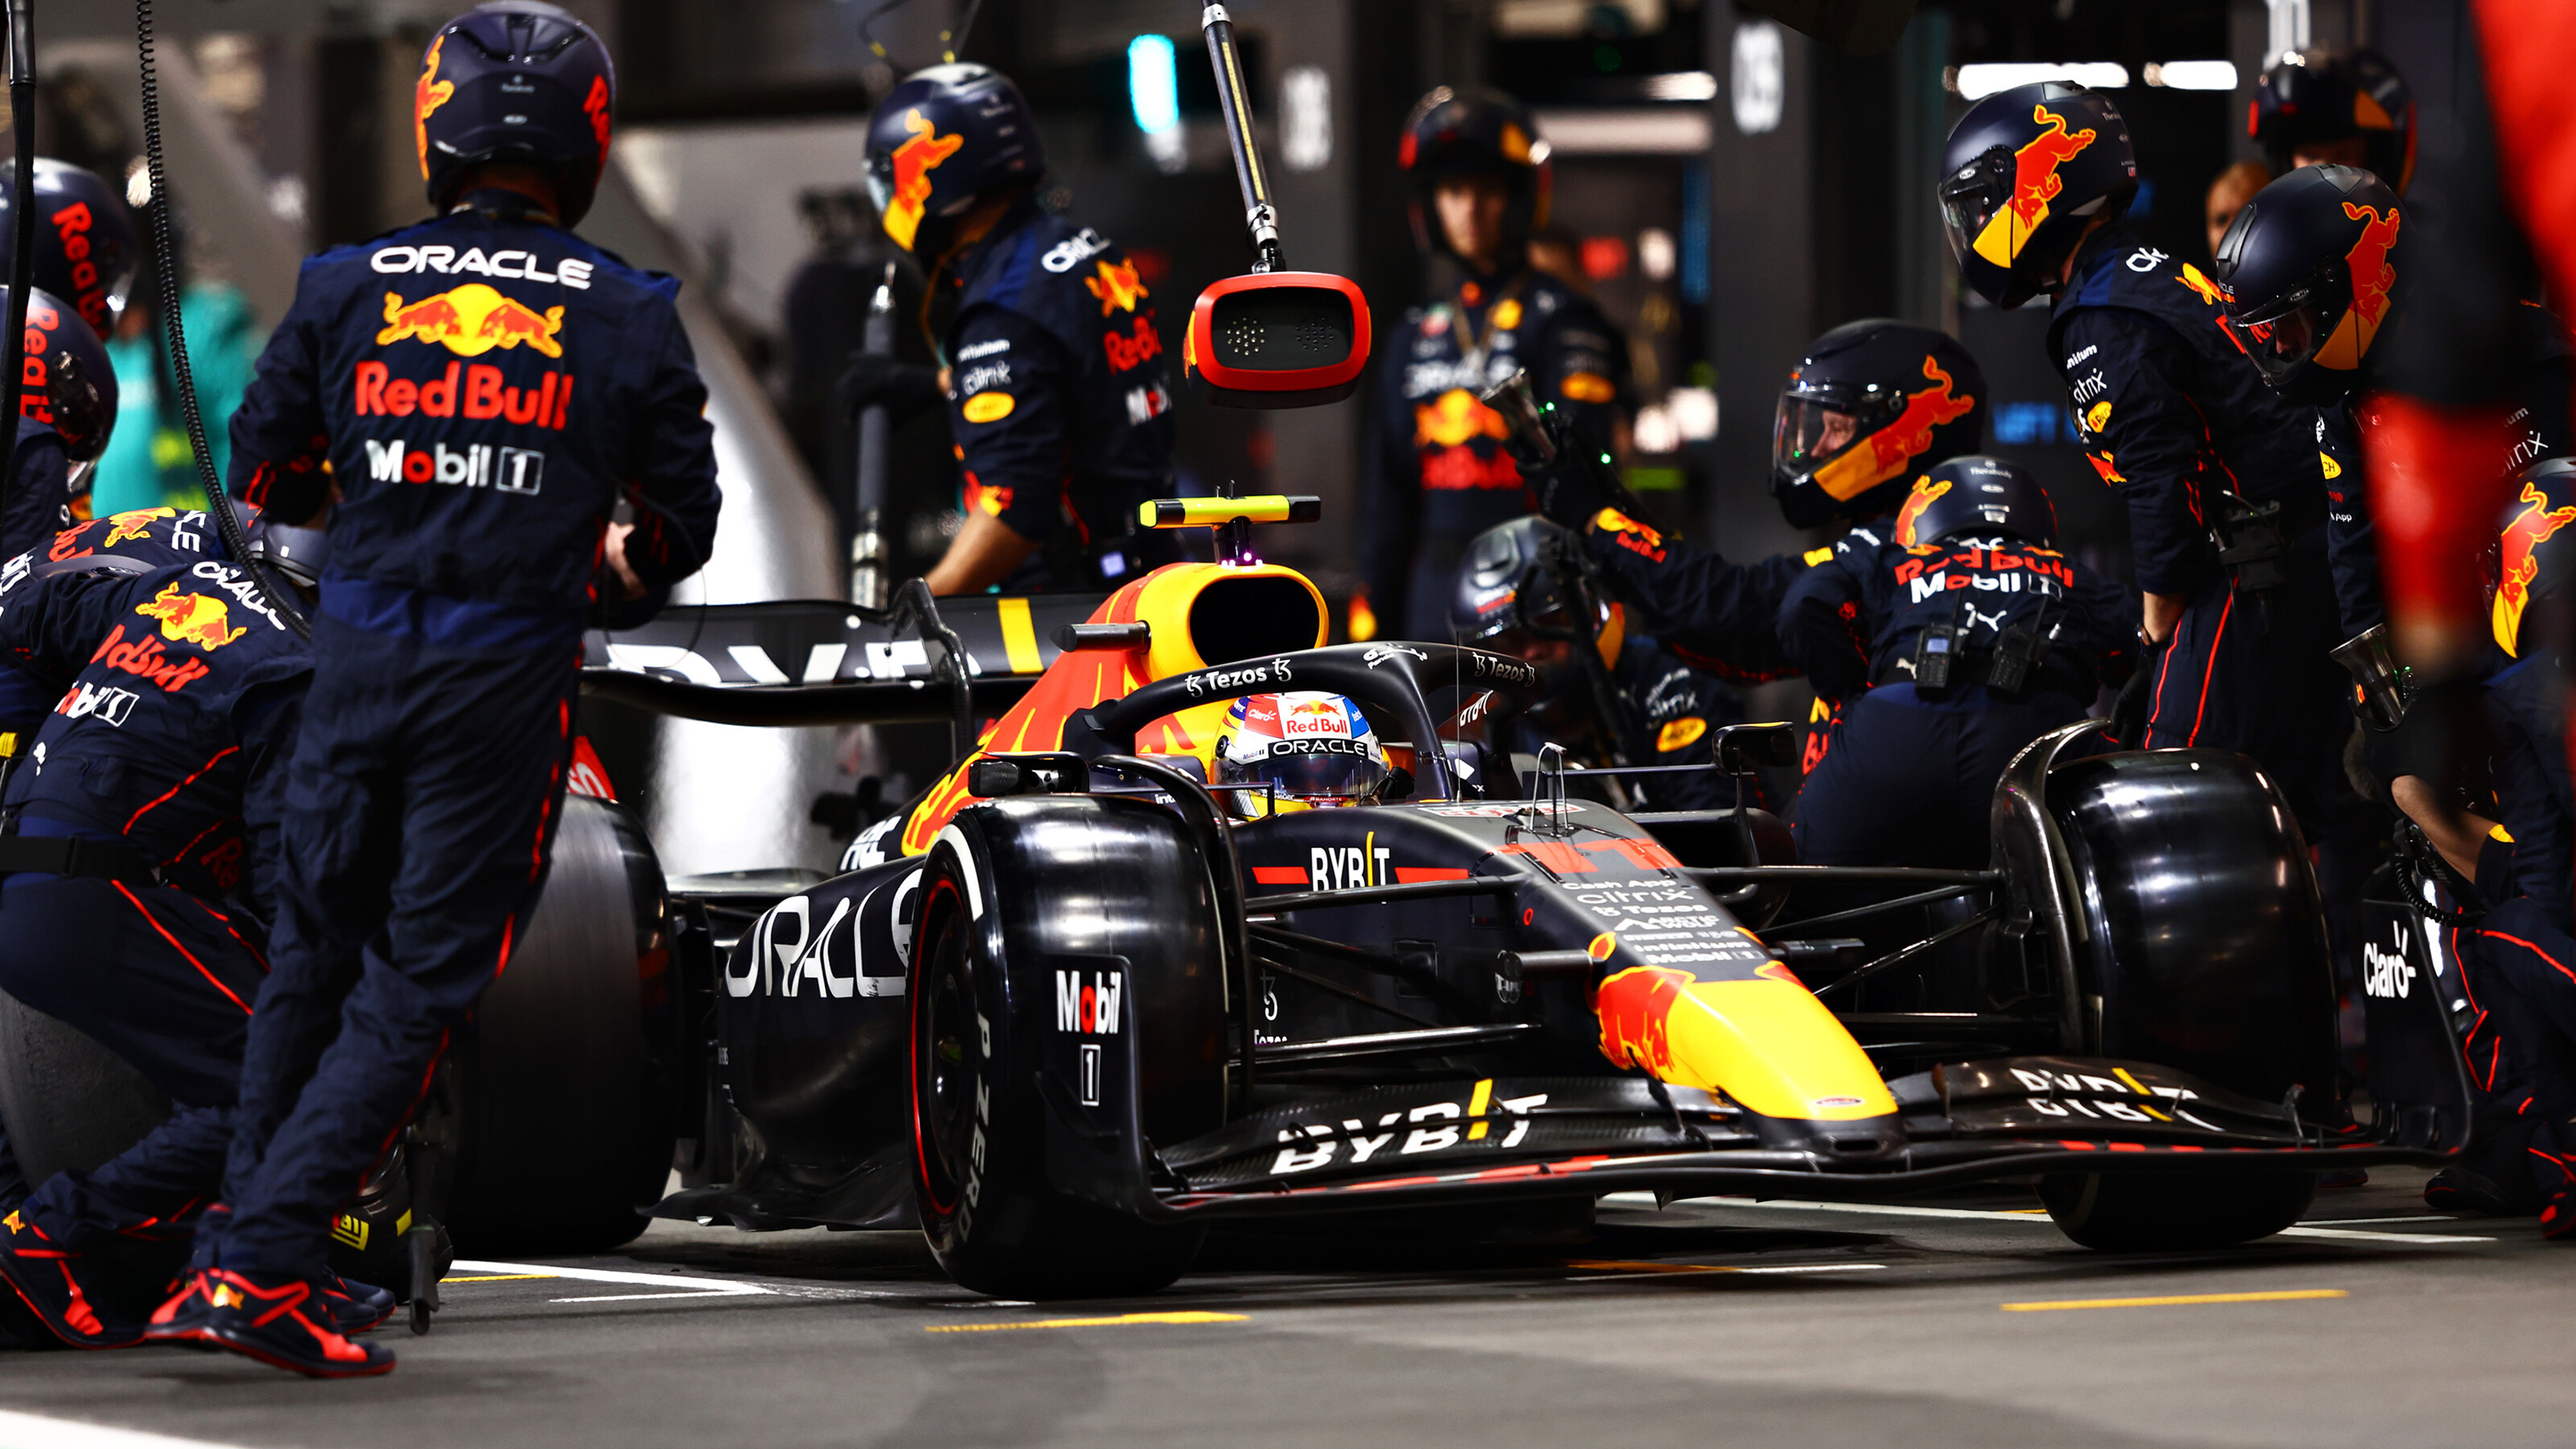 Image Aan het begin van het F1-seizoen van 2022 weerd een reeks nieuwe regels geïntroduceerd die hebben geresulteerd in een volledig nieuwe look en feel voor de auto's. Voor meer informatie over de Oracle Red Bull Racing RB18, klik hier om de lancering te bekijken.